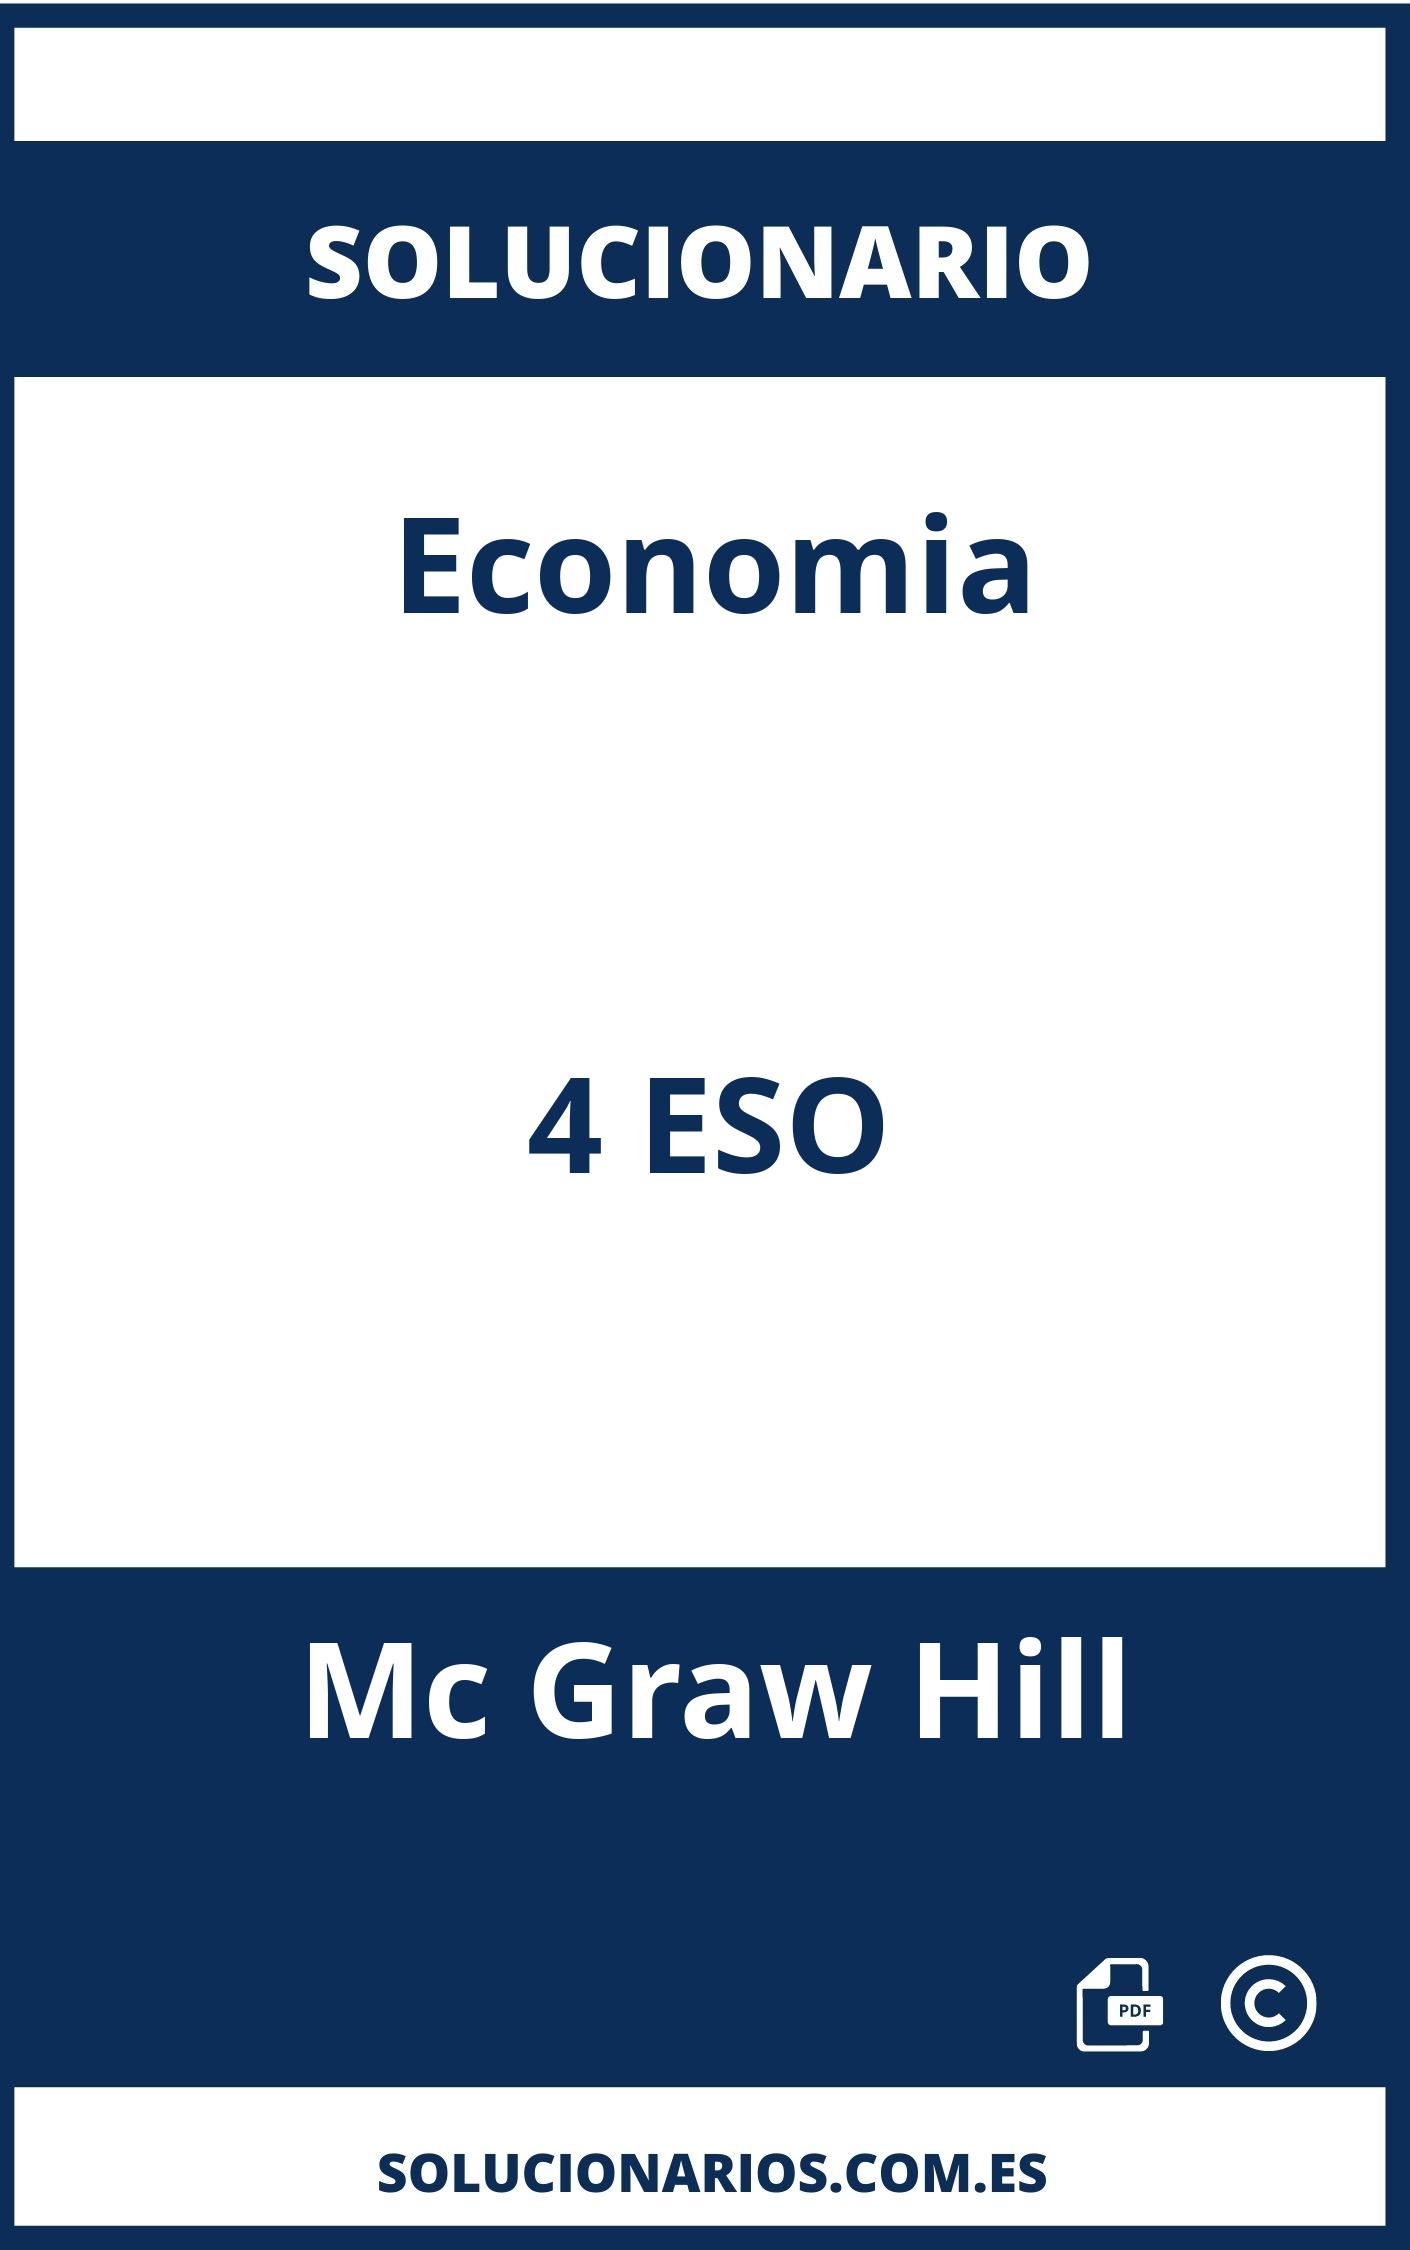 Solucionario Economia 4 ESO Mc Graw Hill